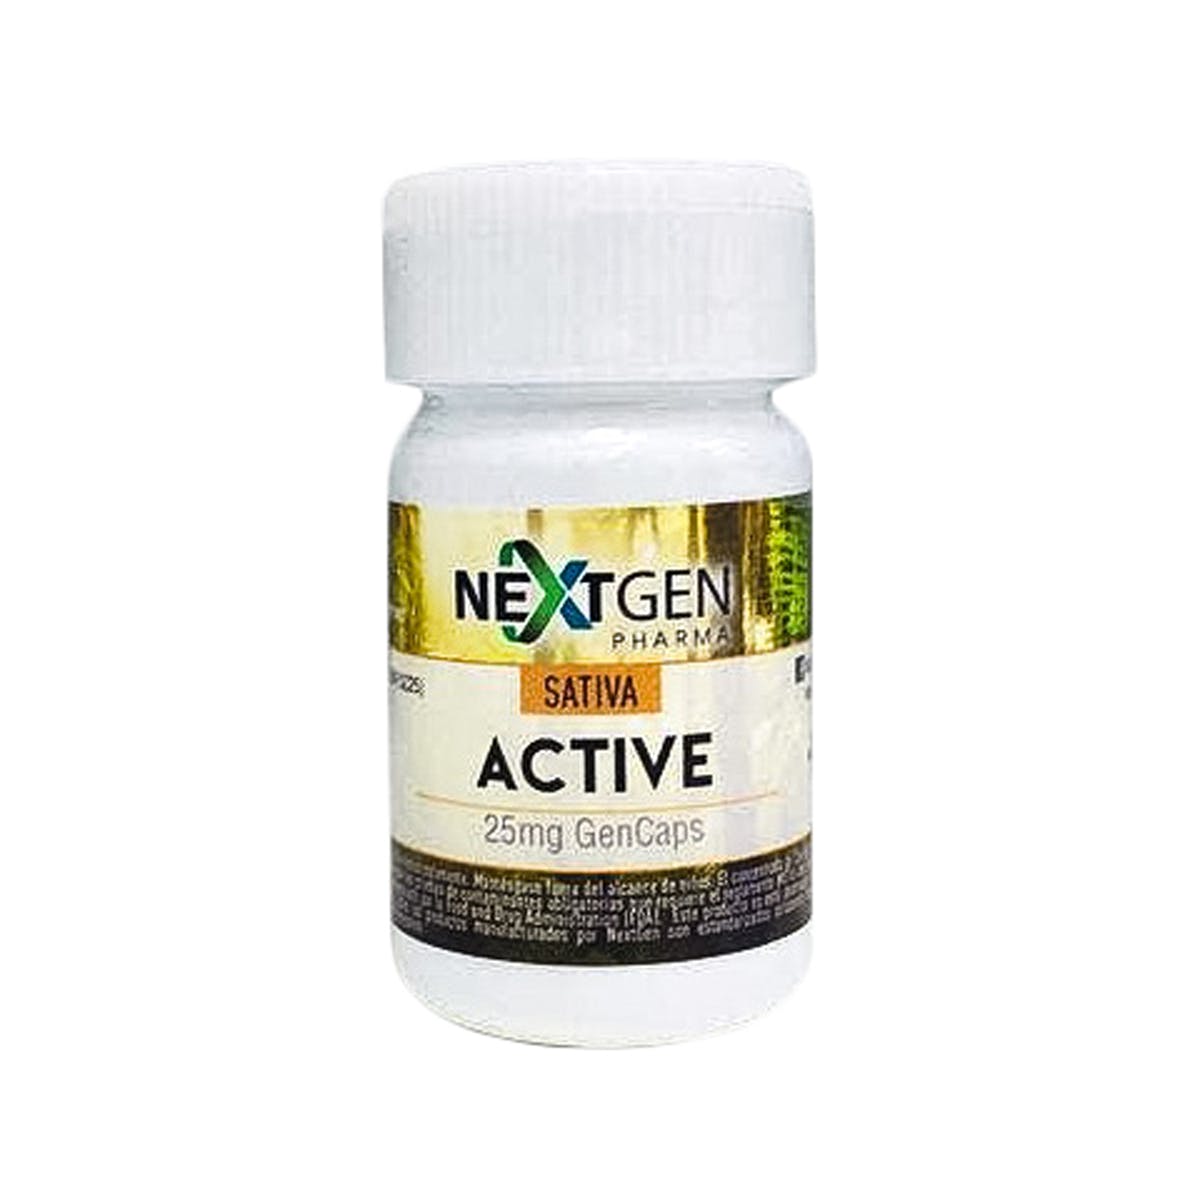 edible-nextgen-pharma-active-25mg-thc-capsules